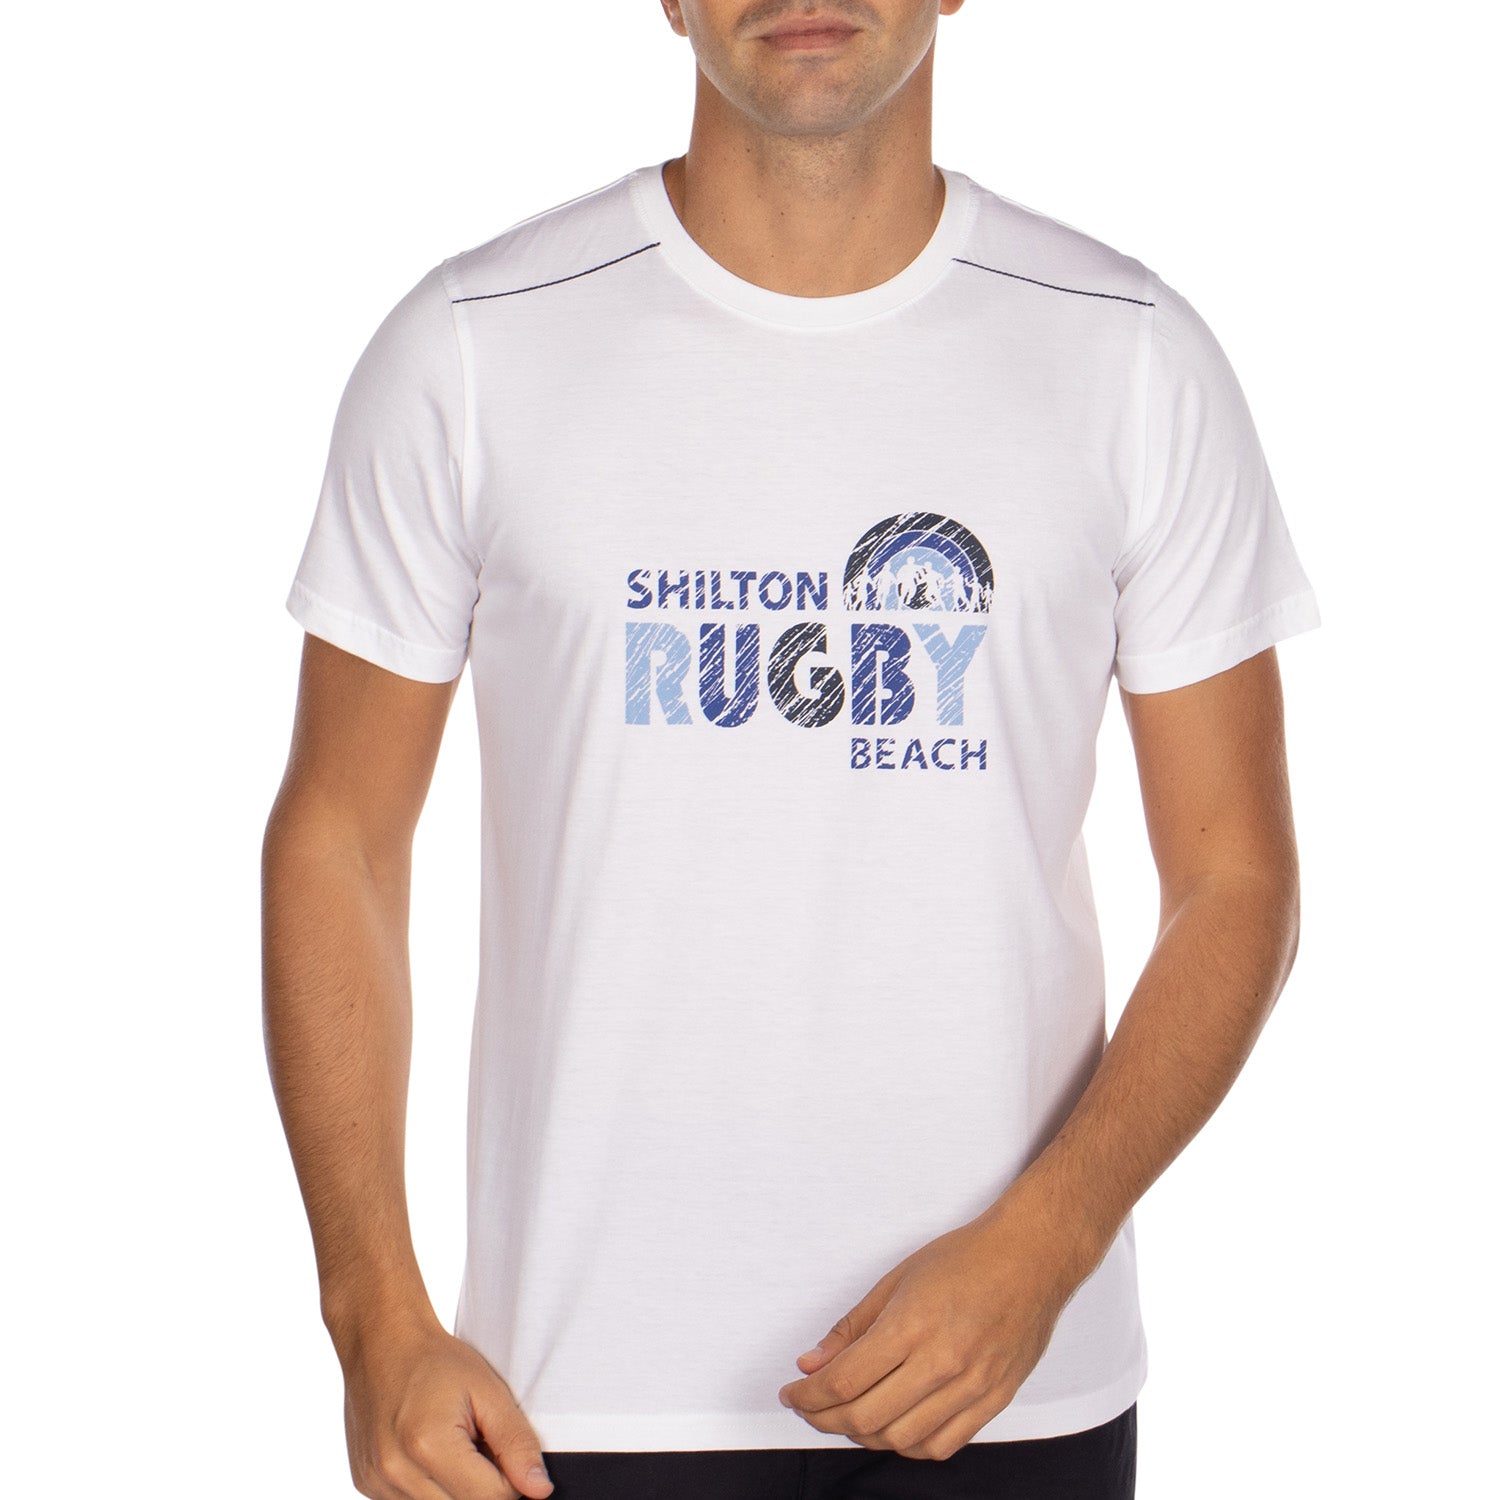 T-shirt beach rugby